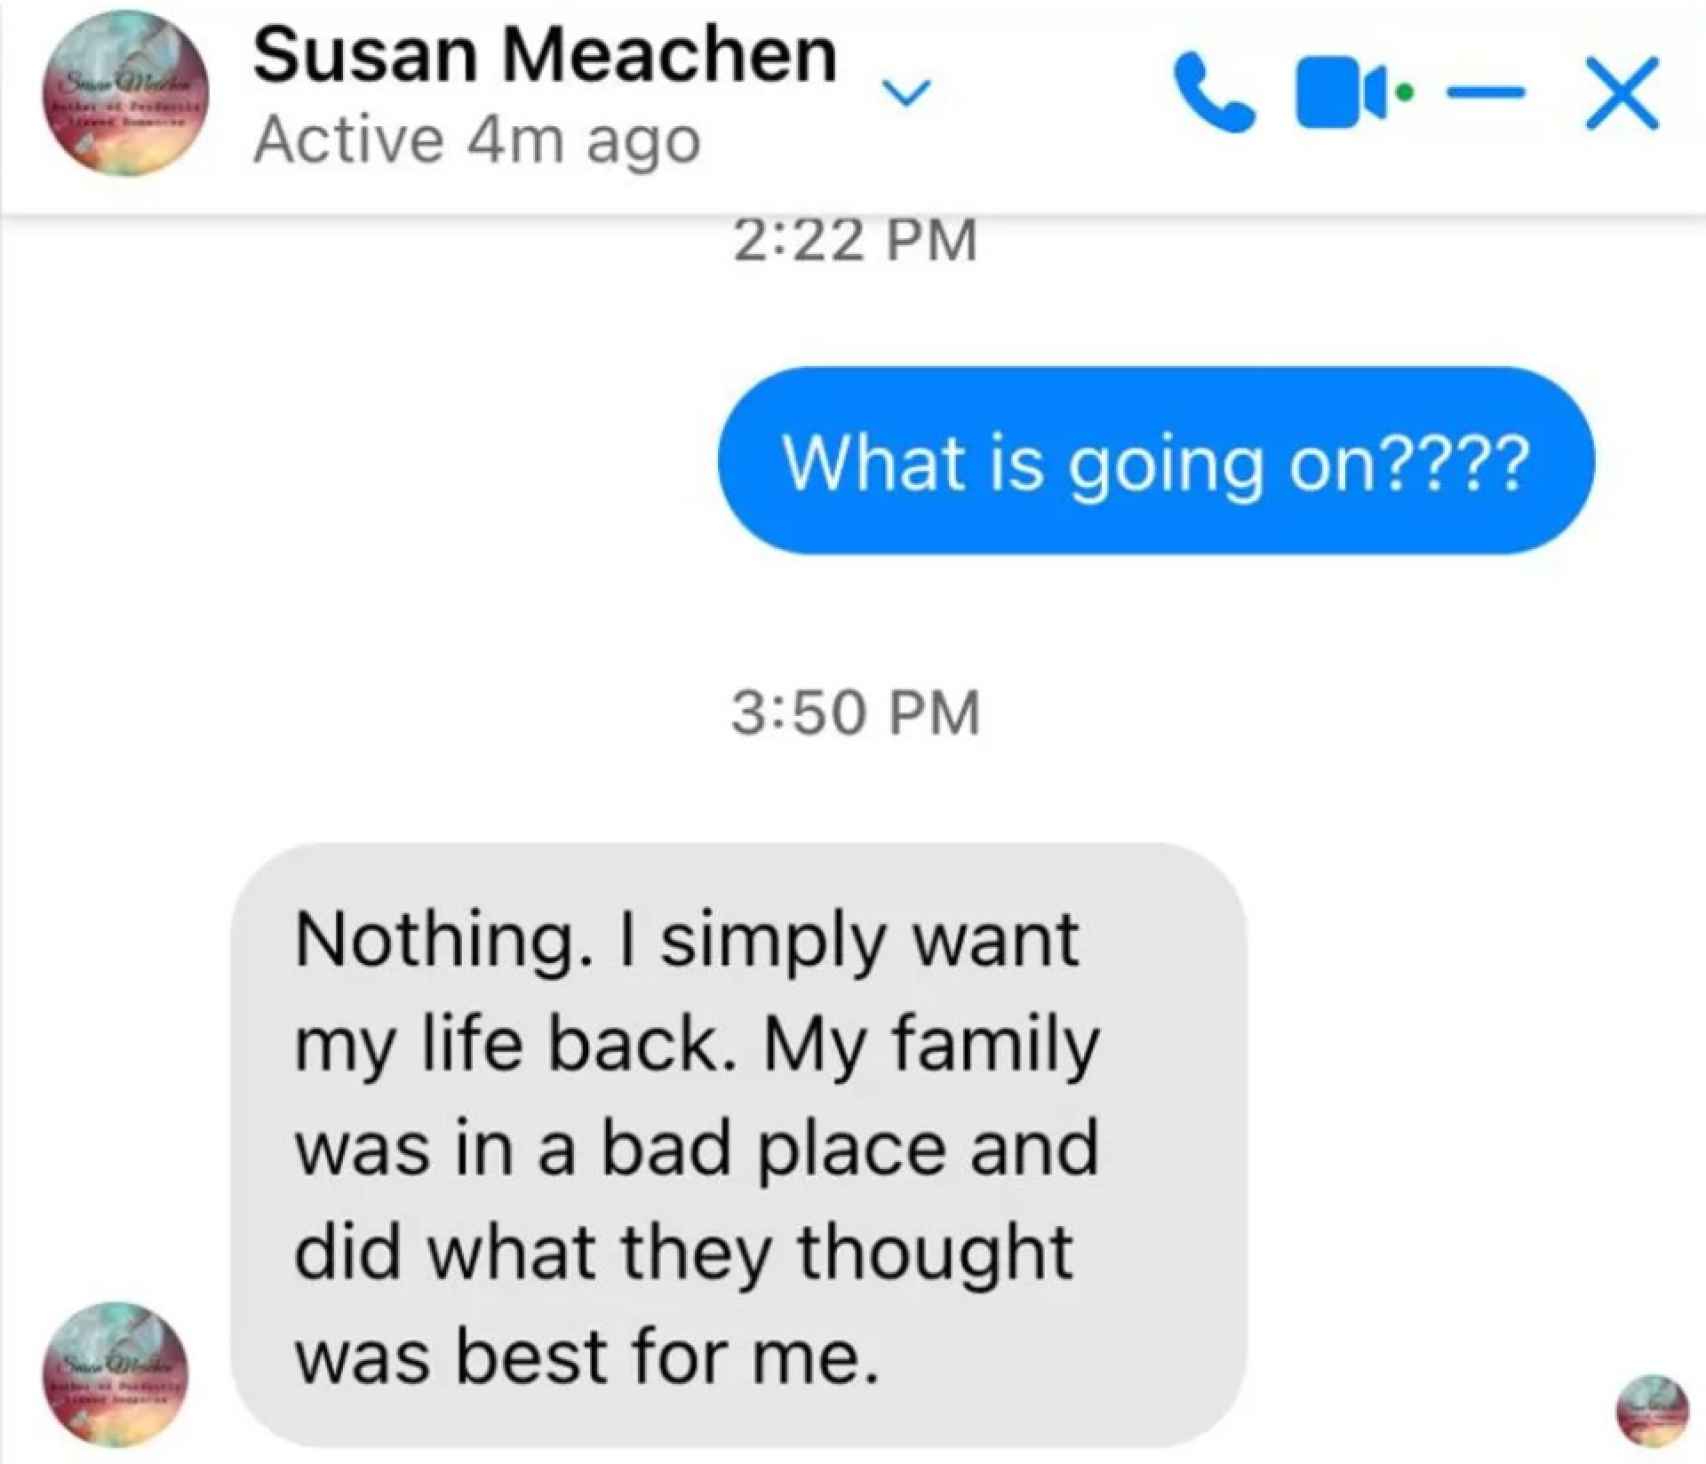 Mensaje de Susan Meachen a su amiga Samantha Cole.